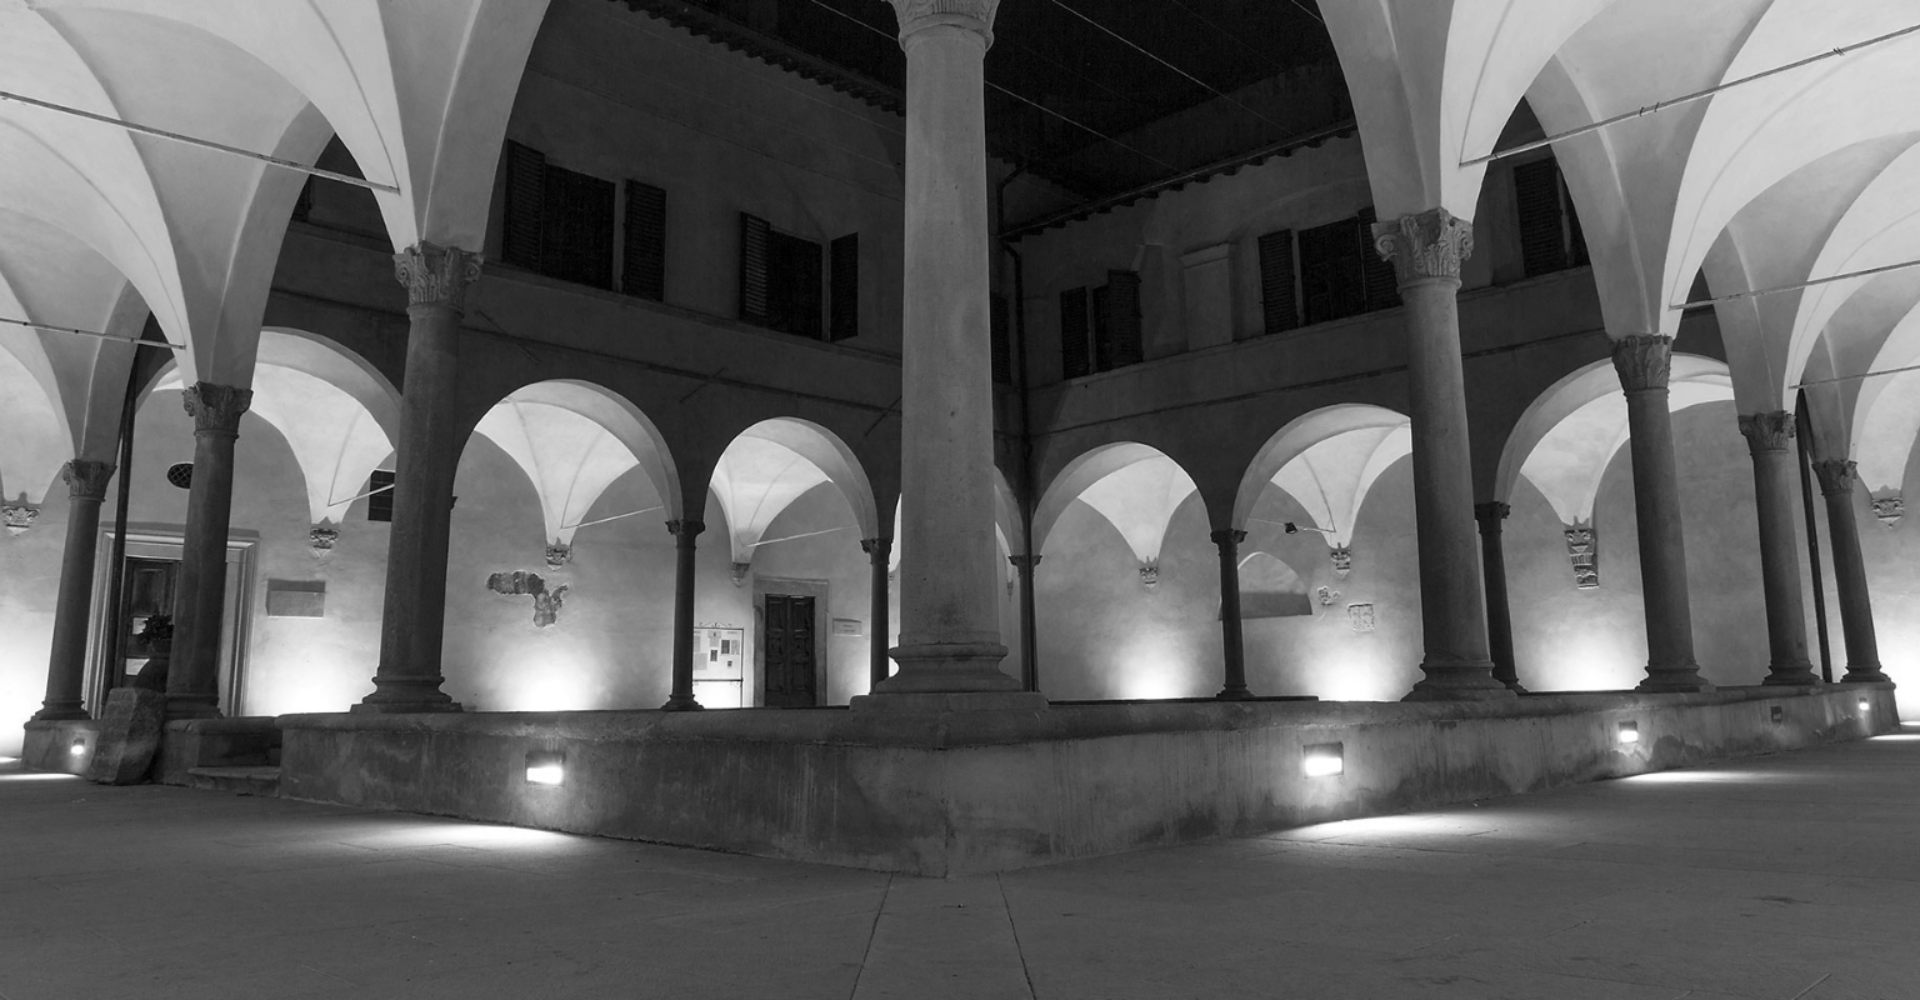 Foto in bianco e nero del quattrocentesco Chiostro di Cennano